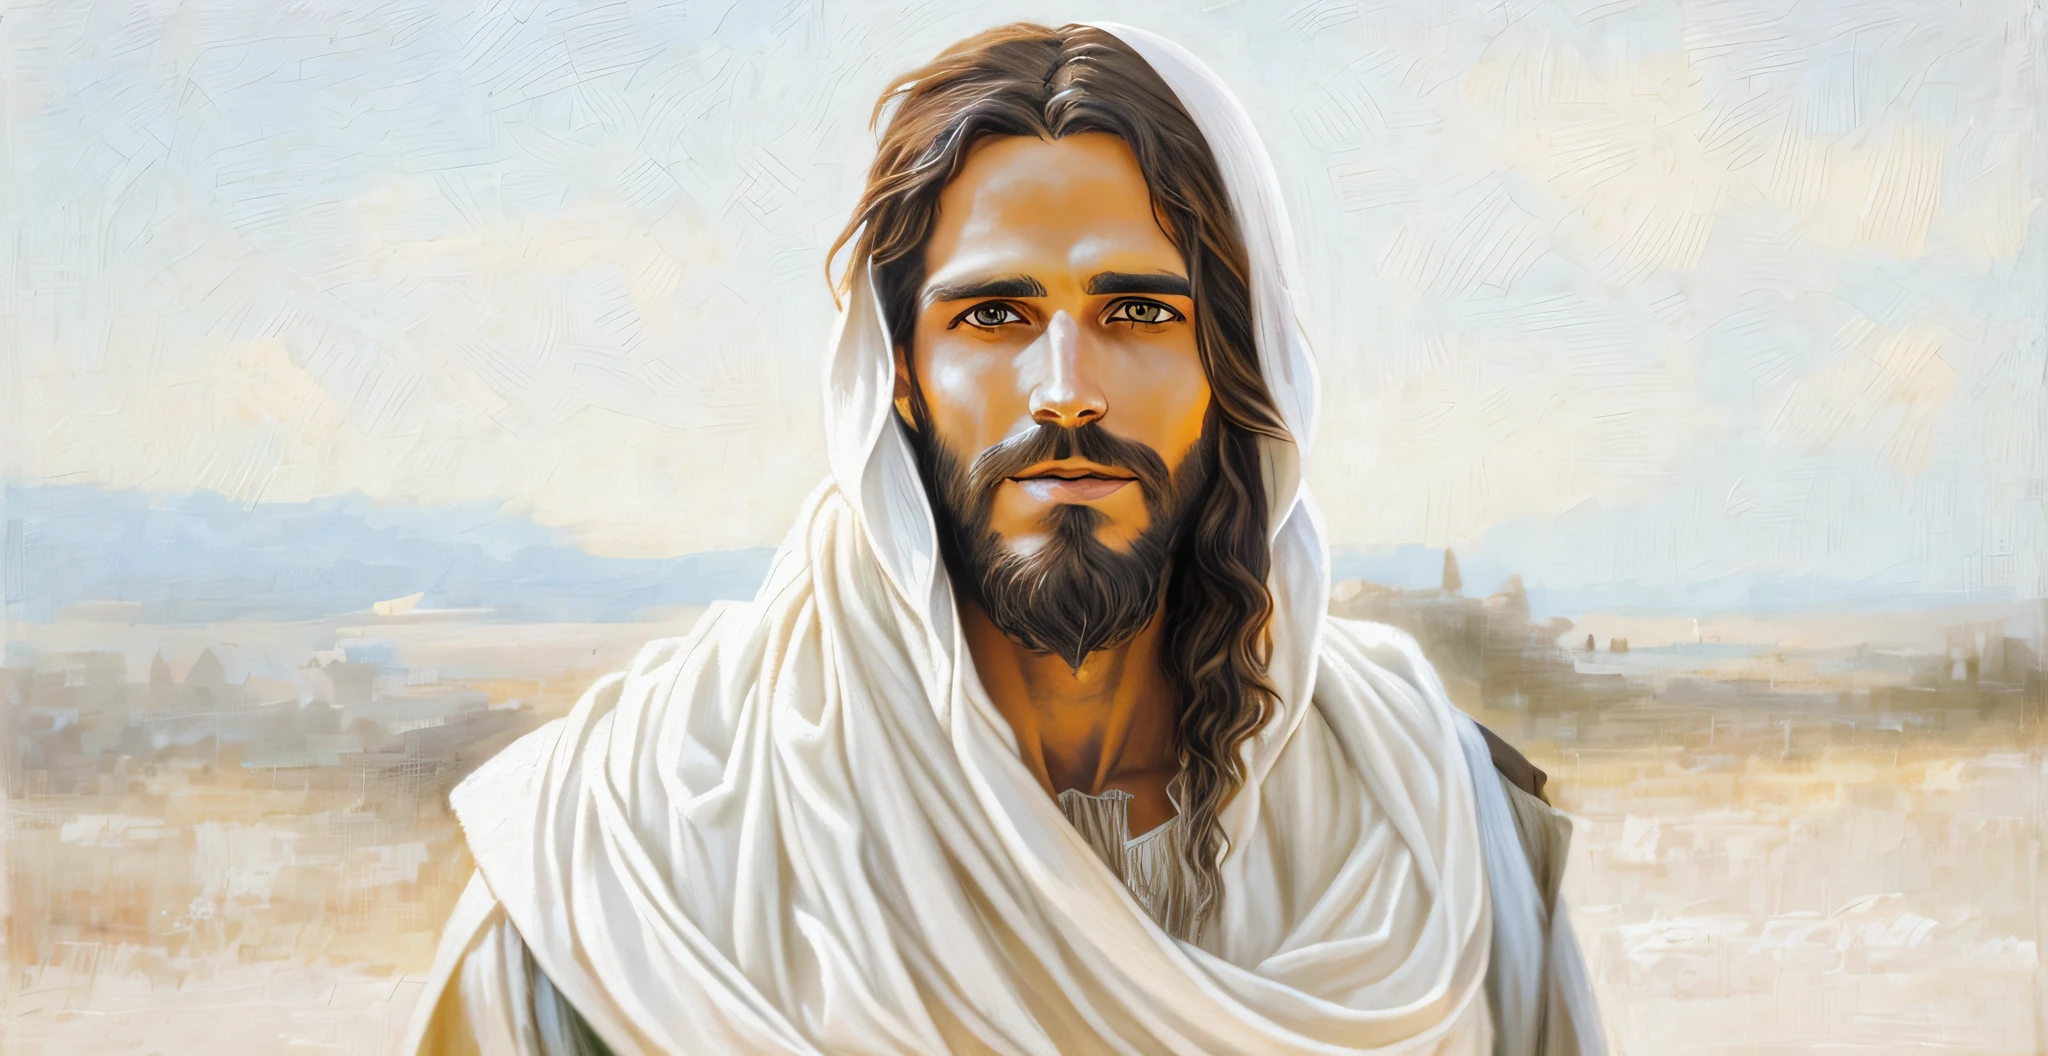 수염과 머리에 흰 목도리를 가진 남자, 예수 Christ, dressed as 예수 Christ, 예수 of Nazareth, face of 예수, 그렉 올슨, 예수, 니고데모, portrait of 예수 Christ, 주님과 구원자, 그 사람이 당신에게 따뜻하게 인사하고 있어요.